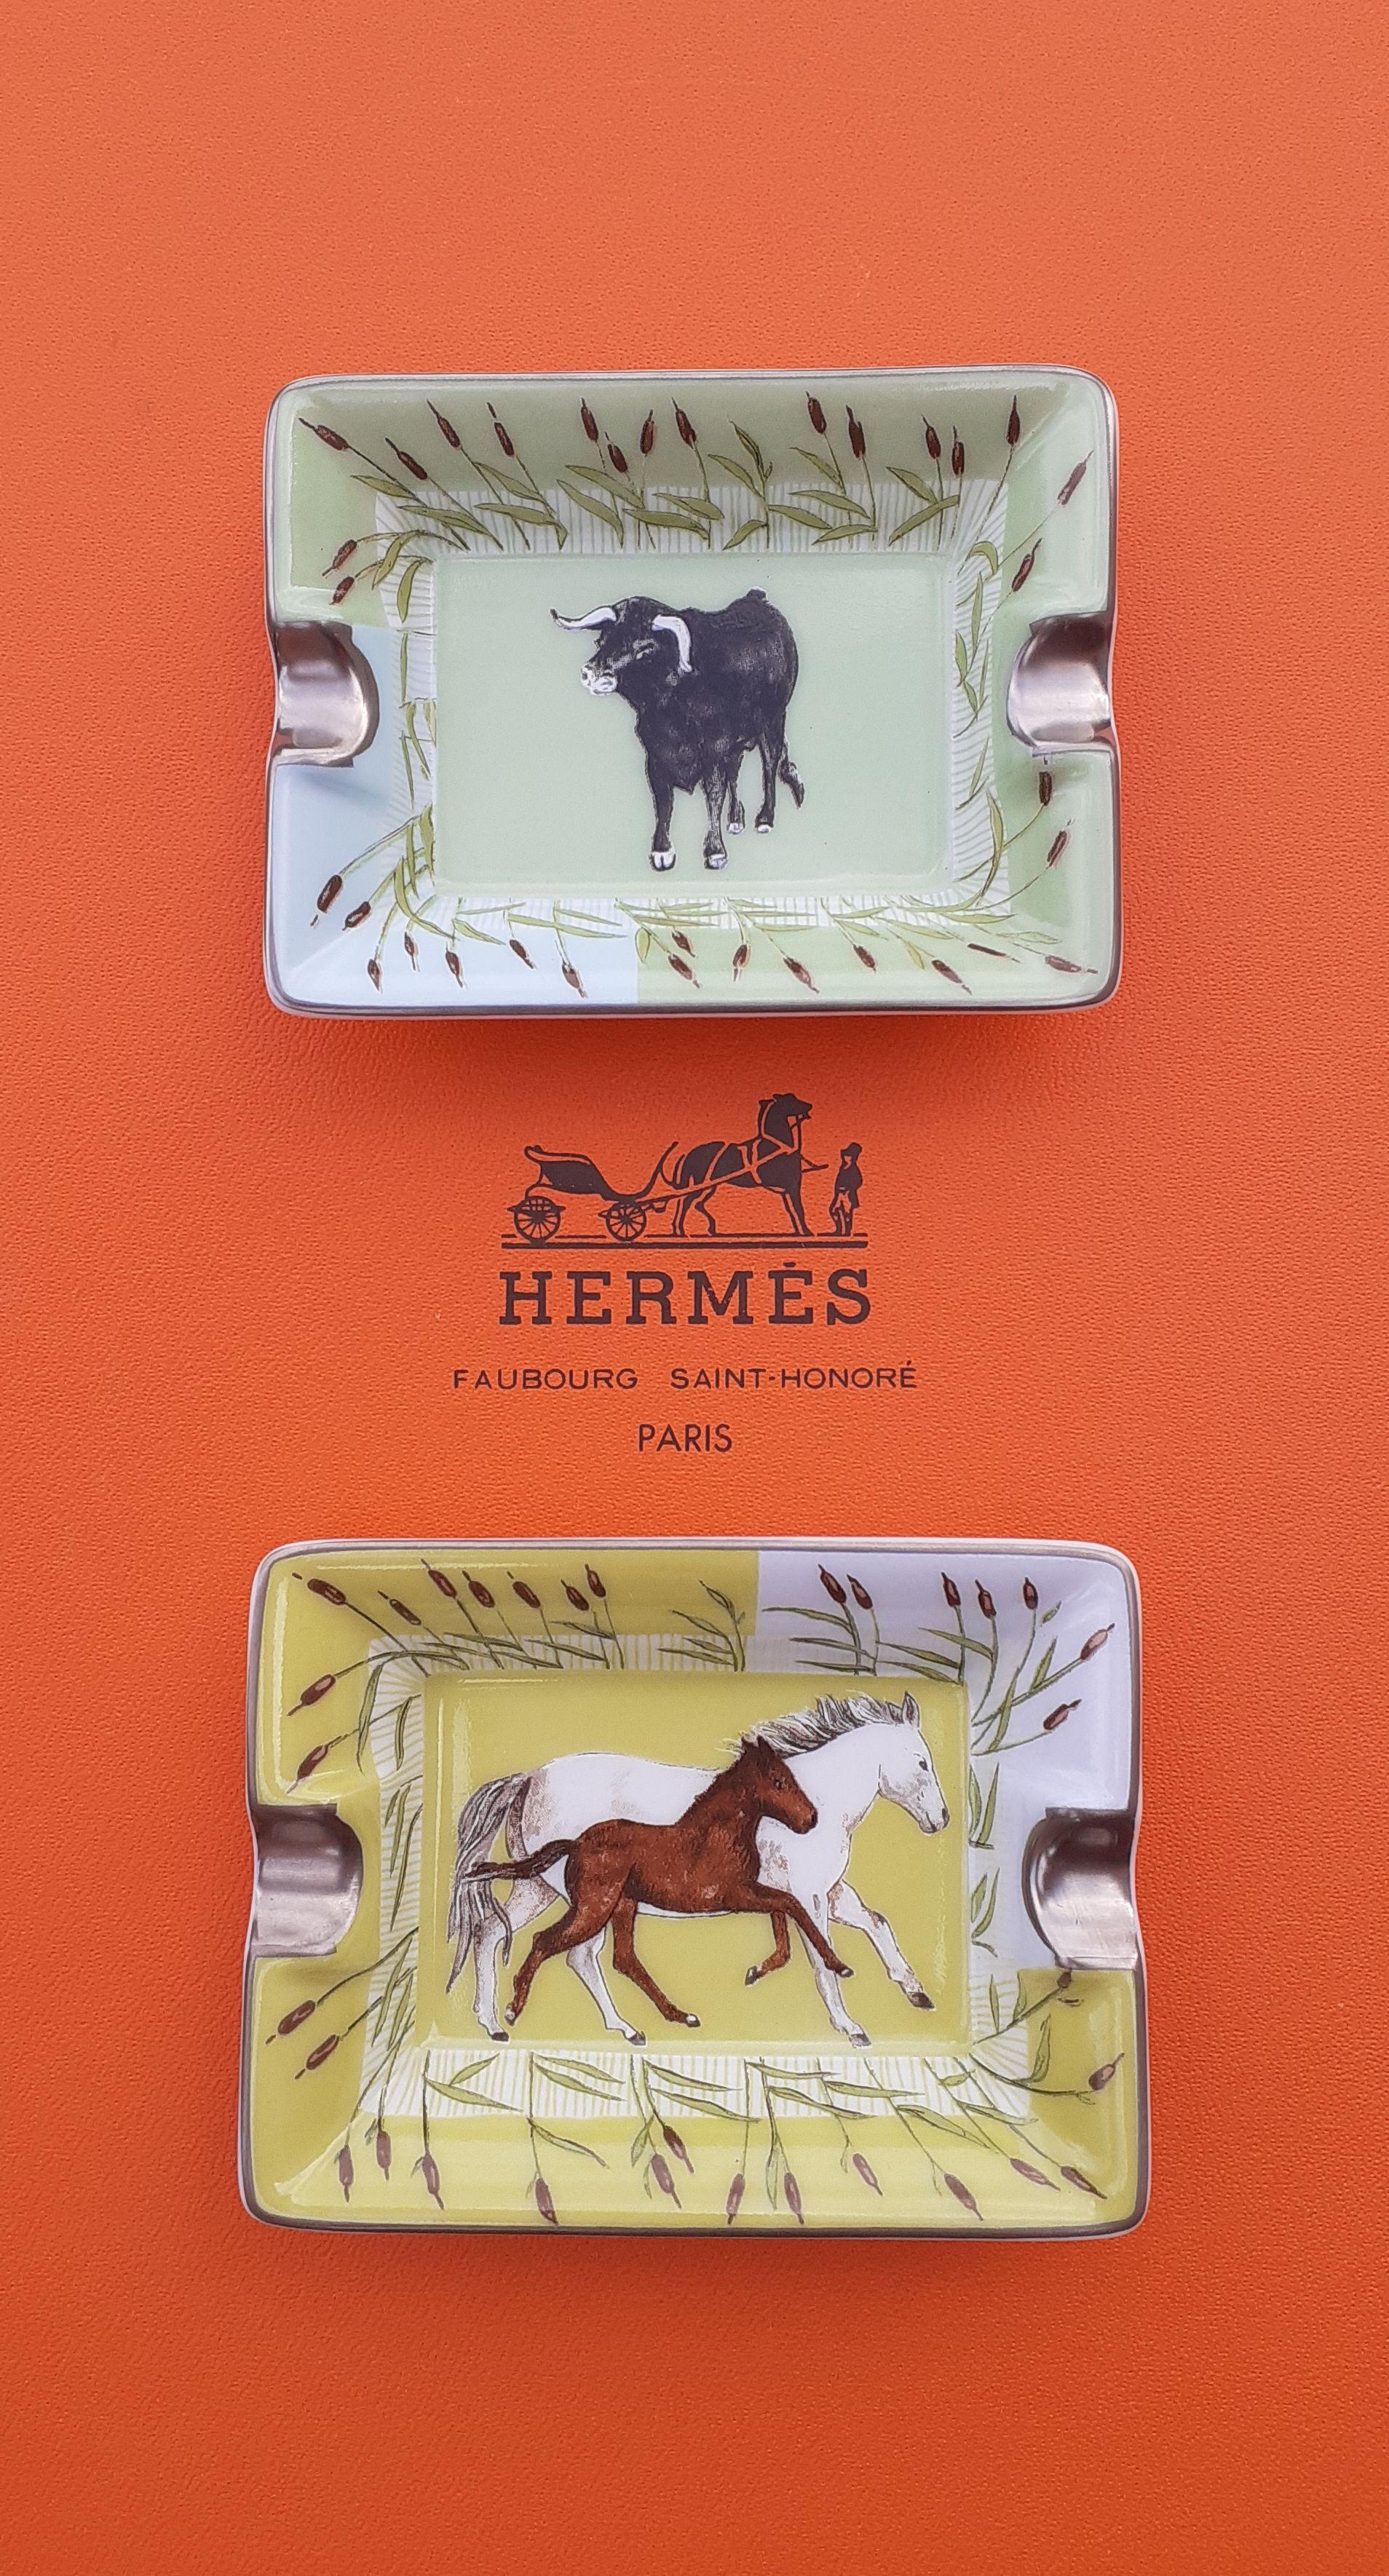 Women's or Men's Hermès Set of 2 mini Ashtrays Bull and Horses Prints in Porcelain Texas 